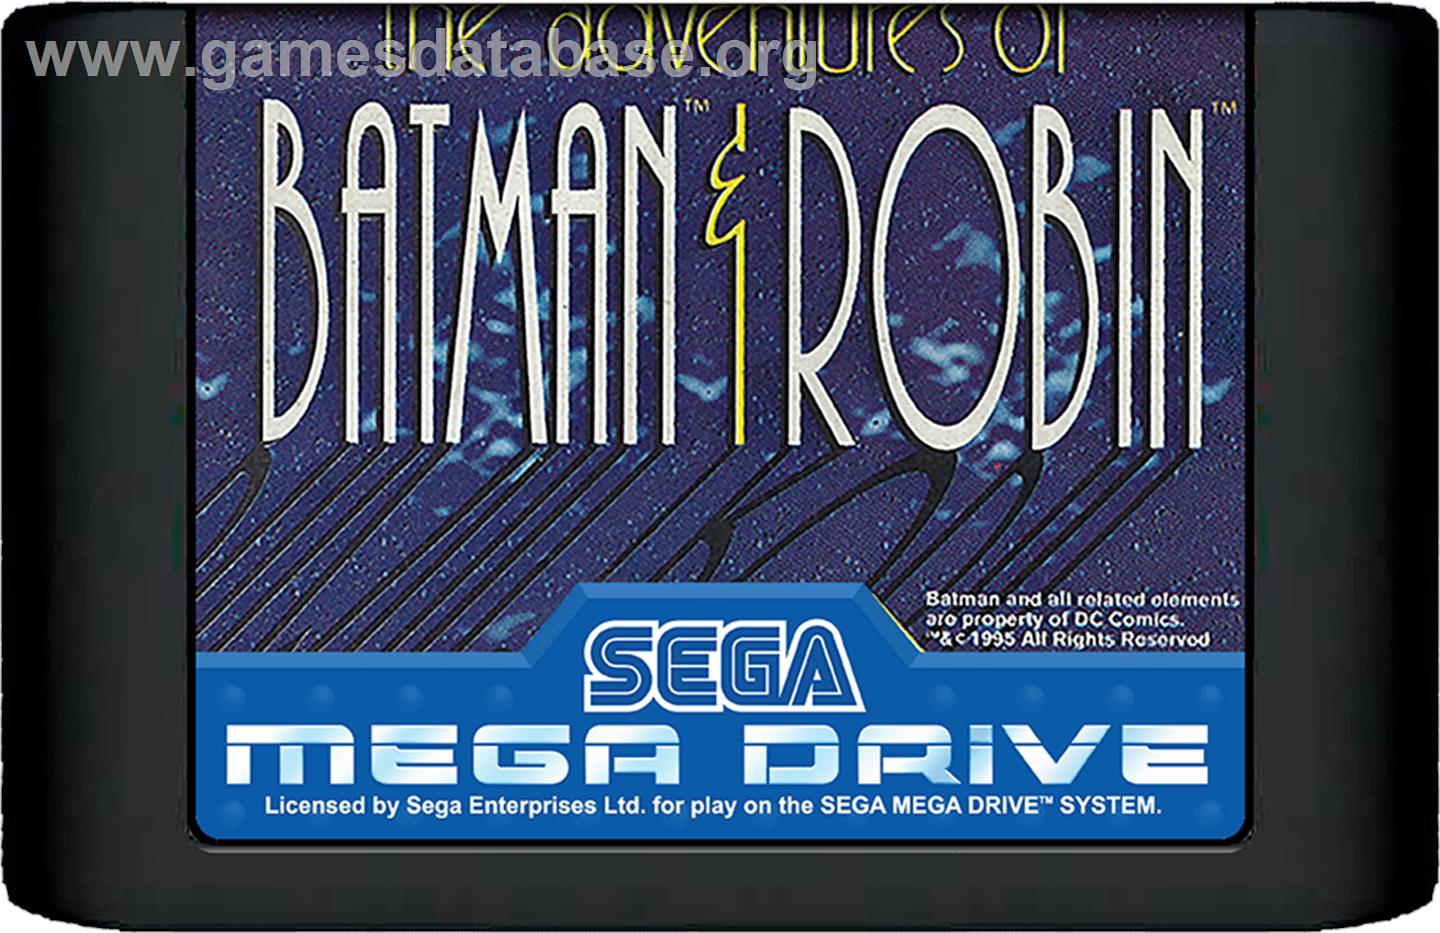 Adventures of Batman and Robin, The - Sega Genesis - Artwork - Cartridge